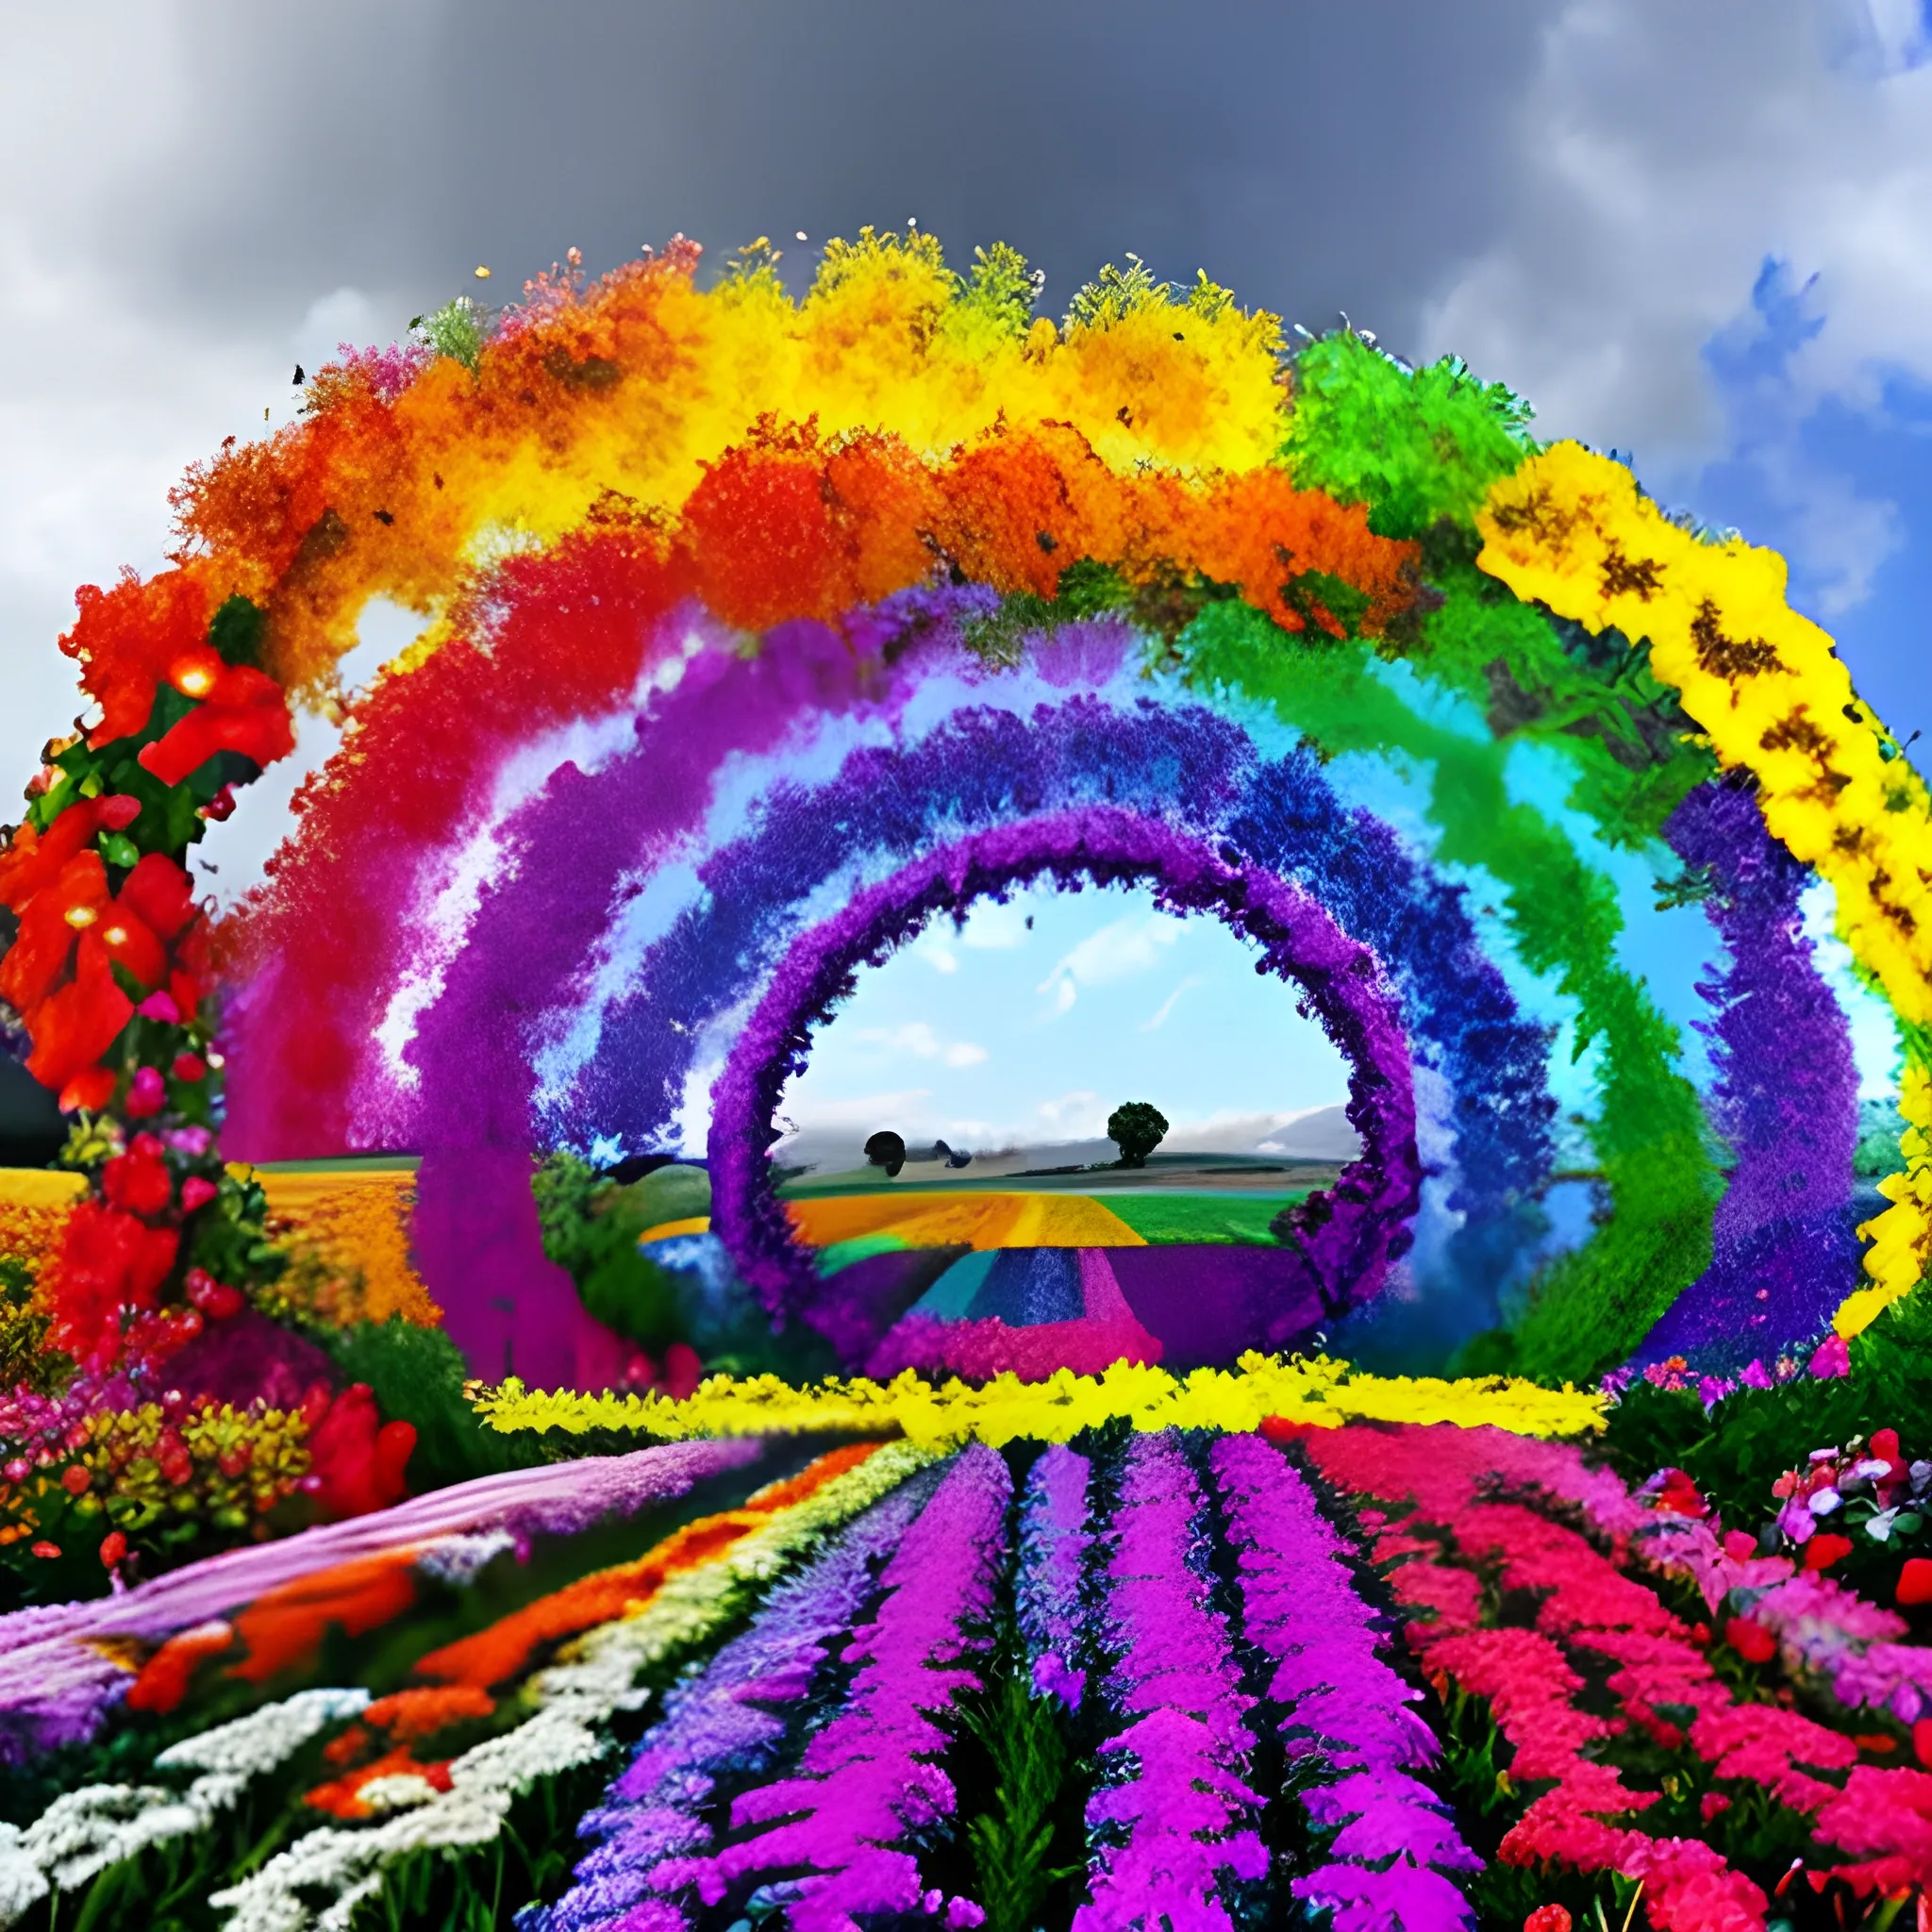 "Genera una imagen de un arco iris doble sobre un campo de flores silvestres."